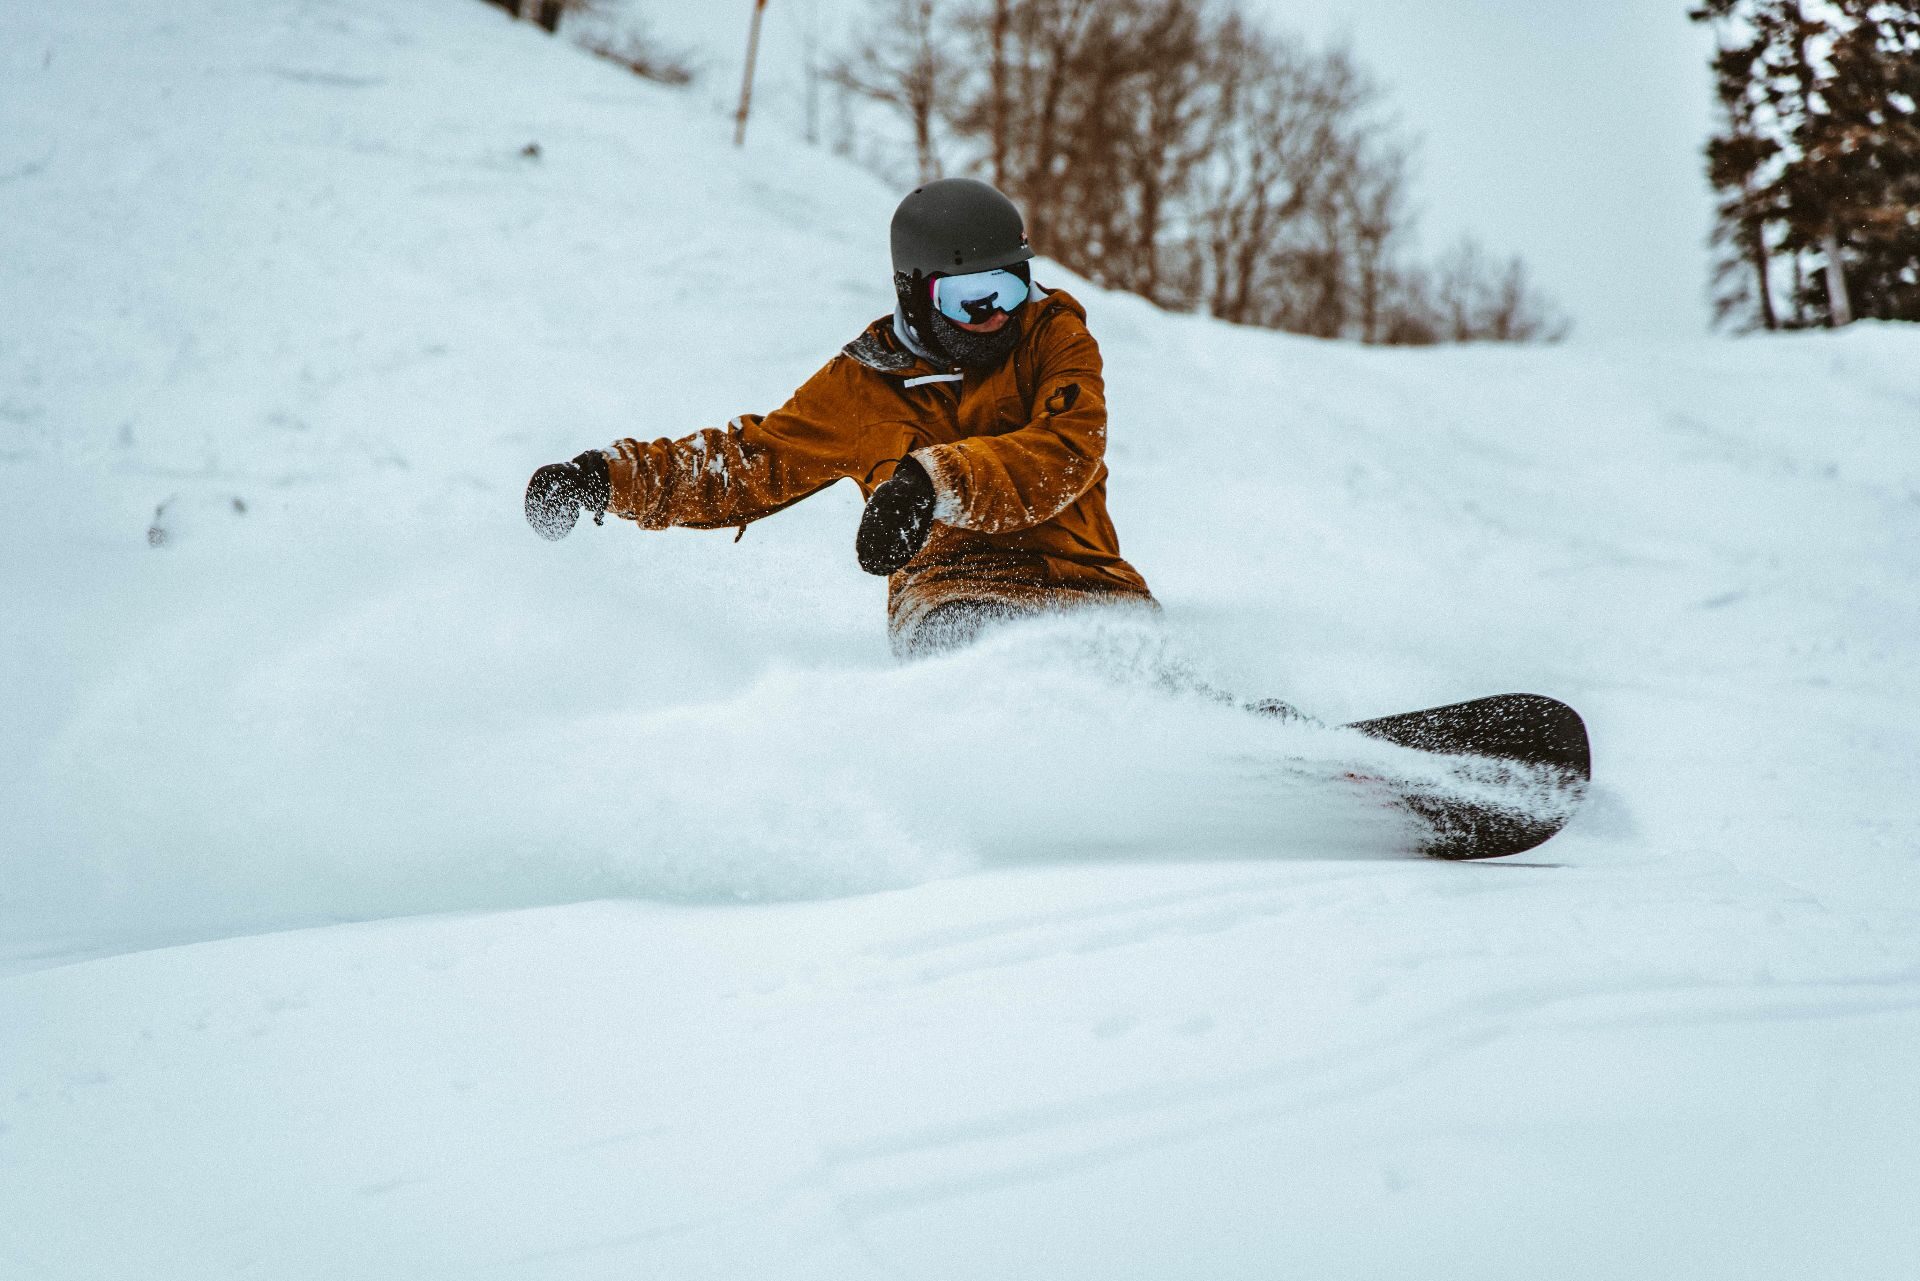 Snowboarding lessons Ponte di Legno